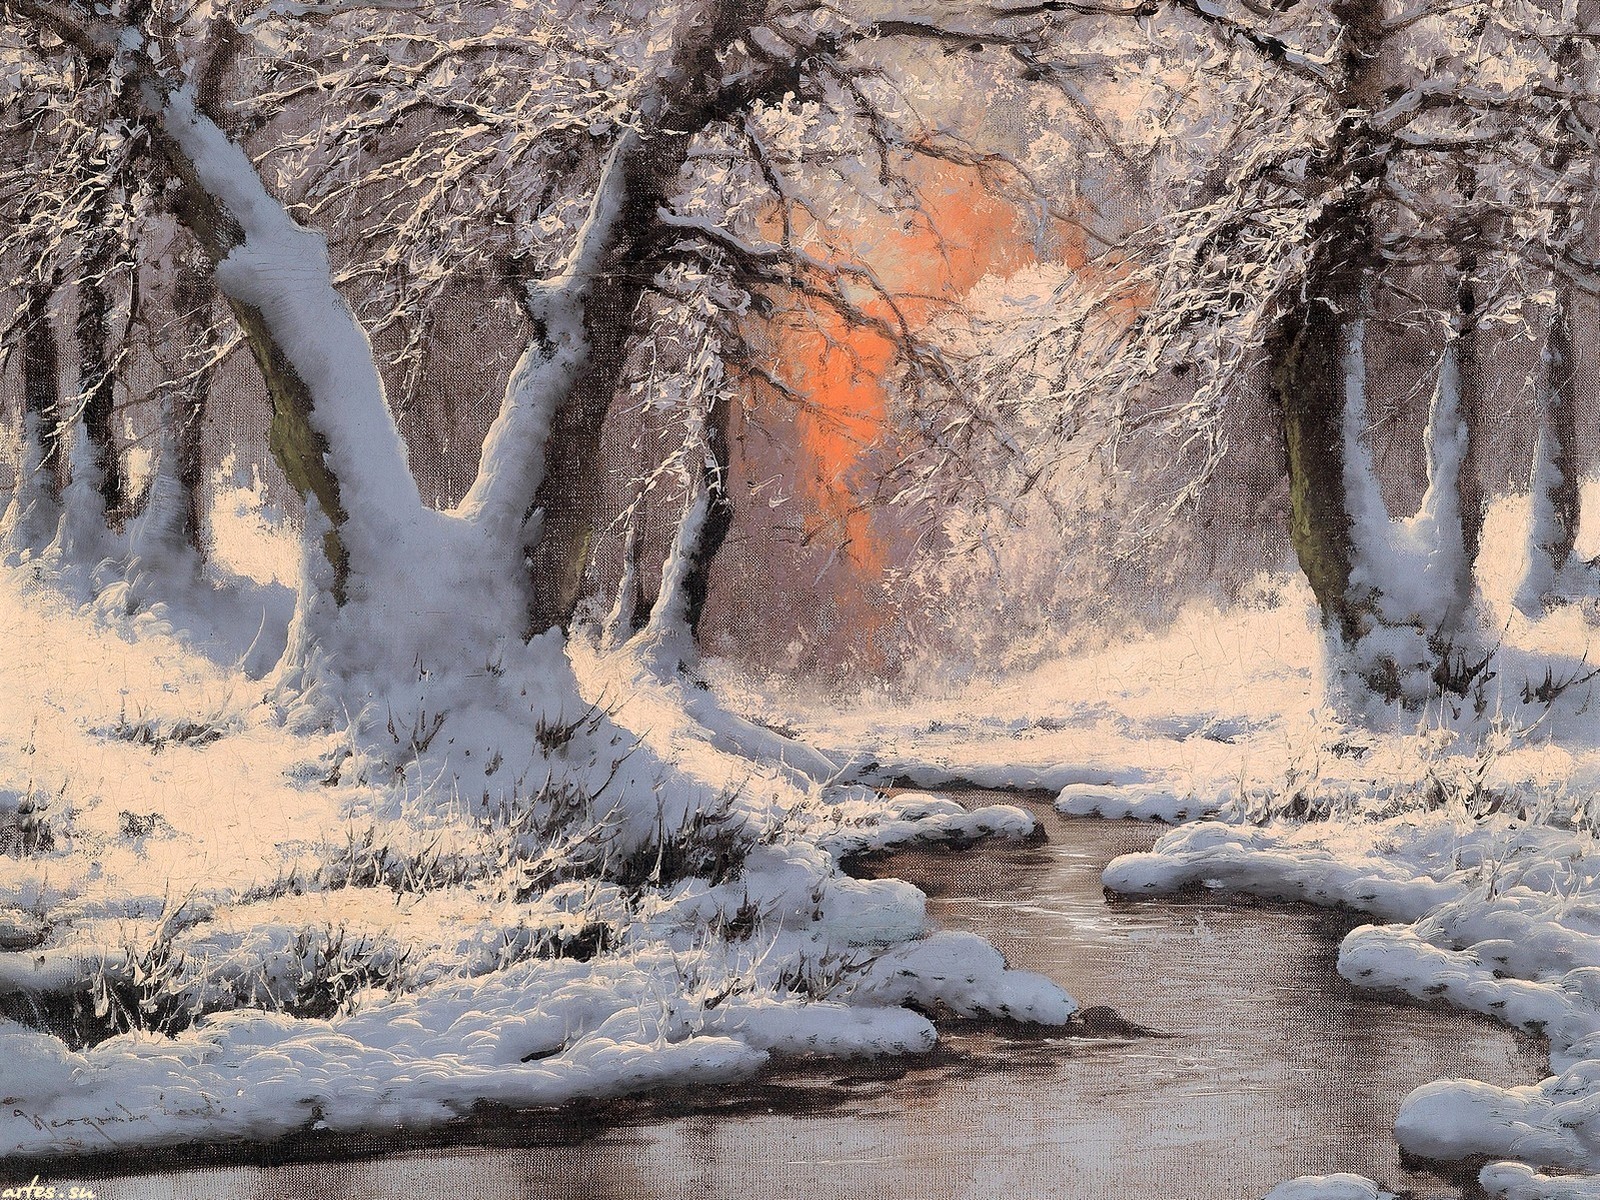 Скачать обои бесплатно Зима, Река, Снег, Лес, Ручей, Картина, Художественные картинка на рабочий стол ПК